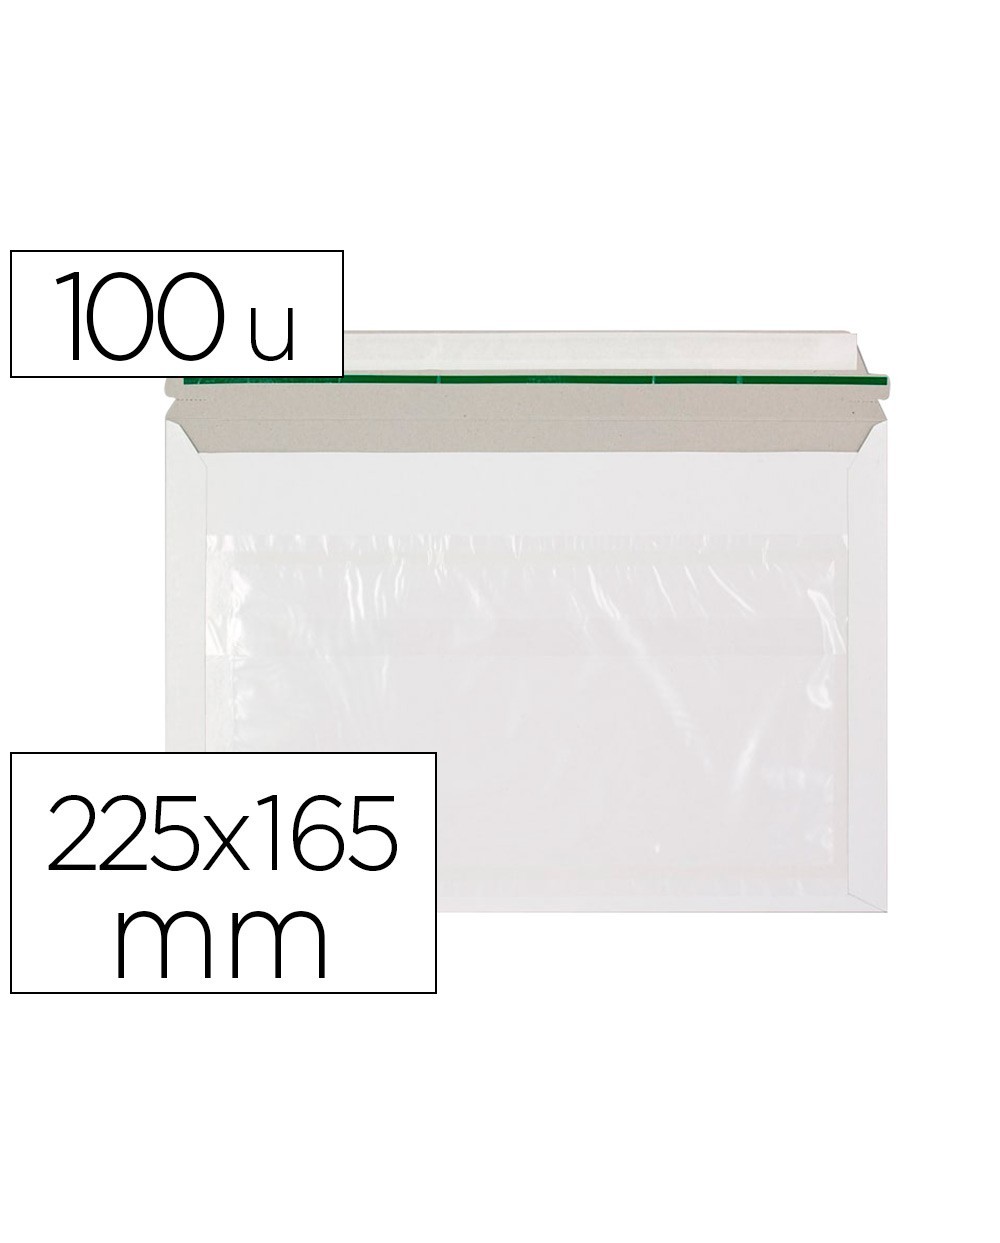 Sobre autoadhesivo q connect portadocumentos 225x165 mm ventana transparente paquete de 100 unidades